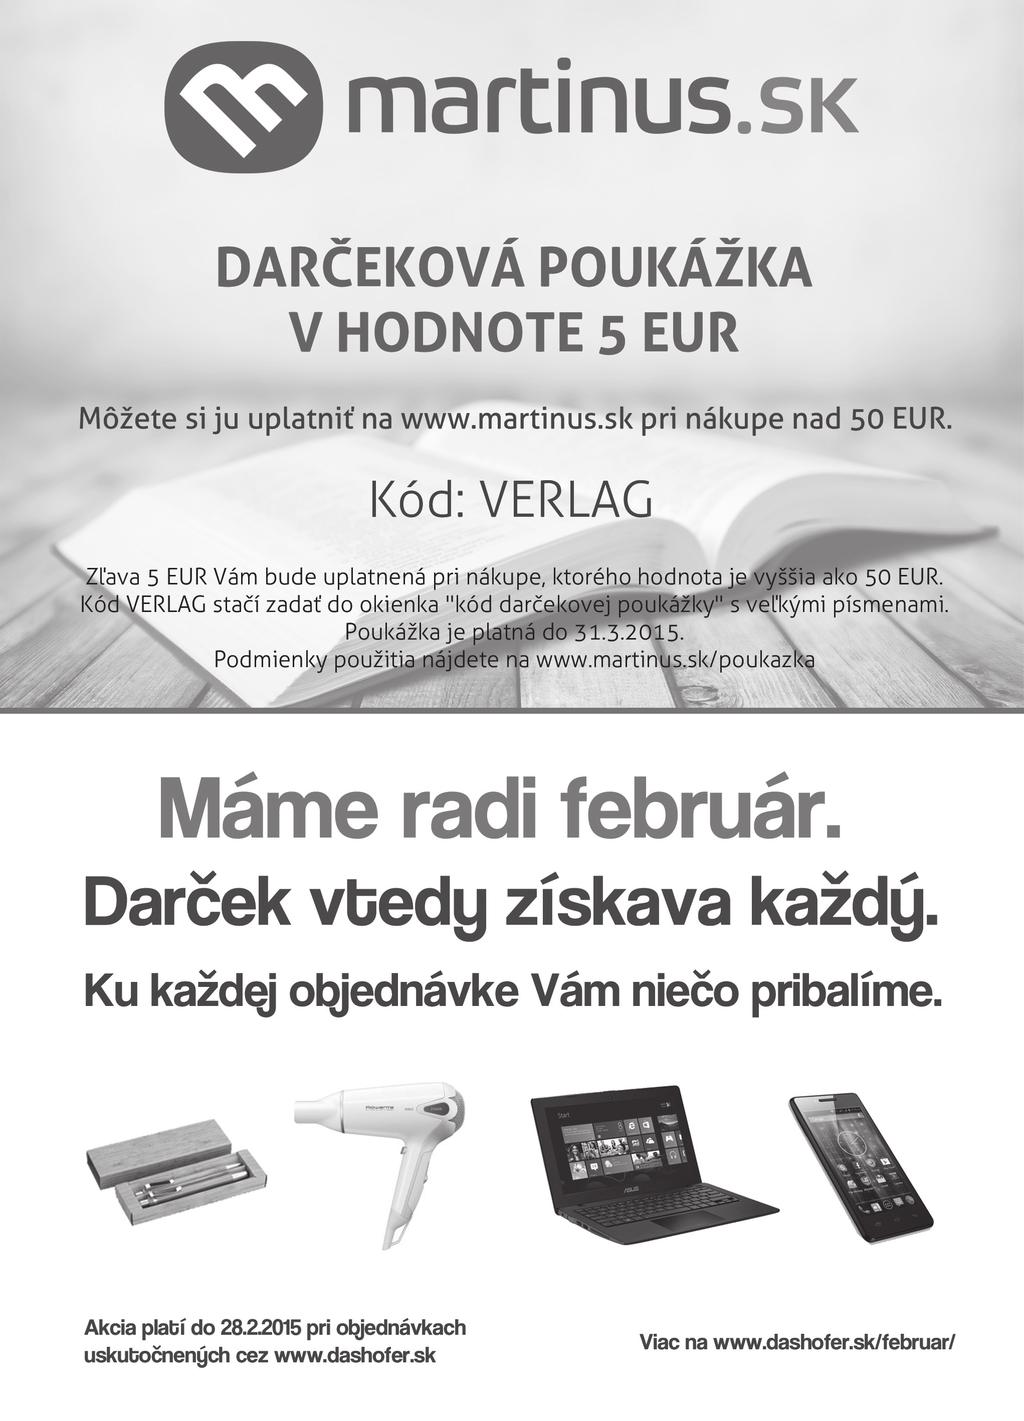 Zákaznícky spravodaj online knižnice Smernice Vydáva vydavateľstvo VERLAG DASHÖFER, s. r. o., Železničiarska 13, 814 99 Bratislava. IČO 35 730 129. Tel.